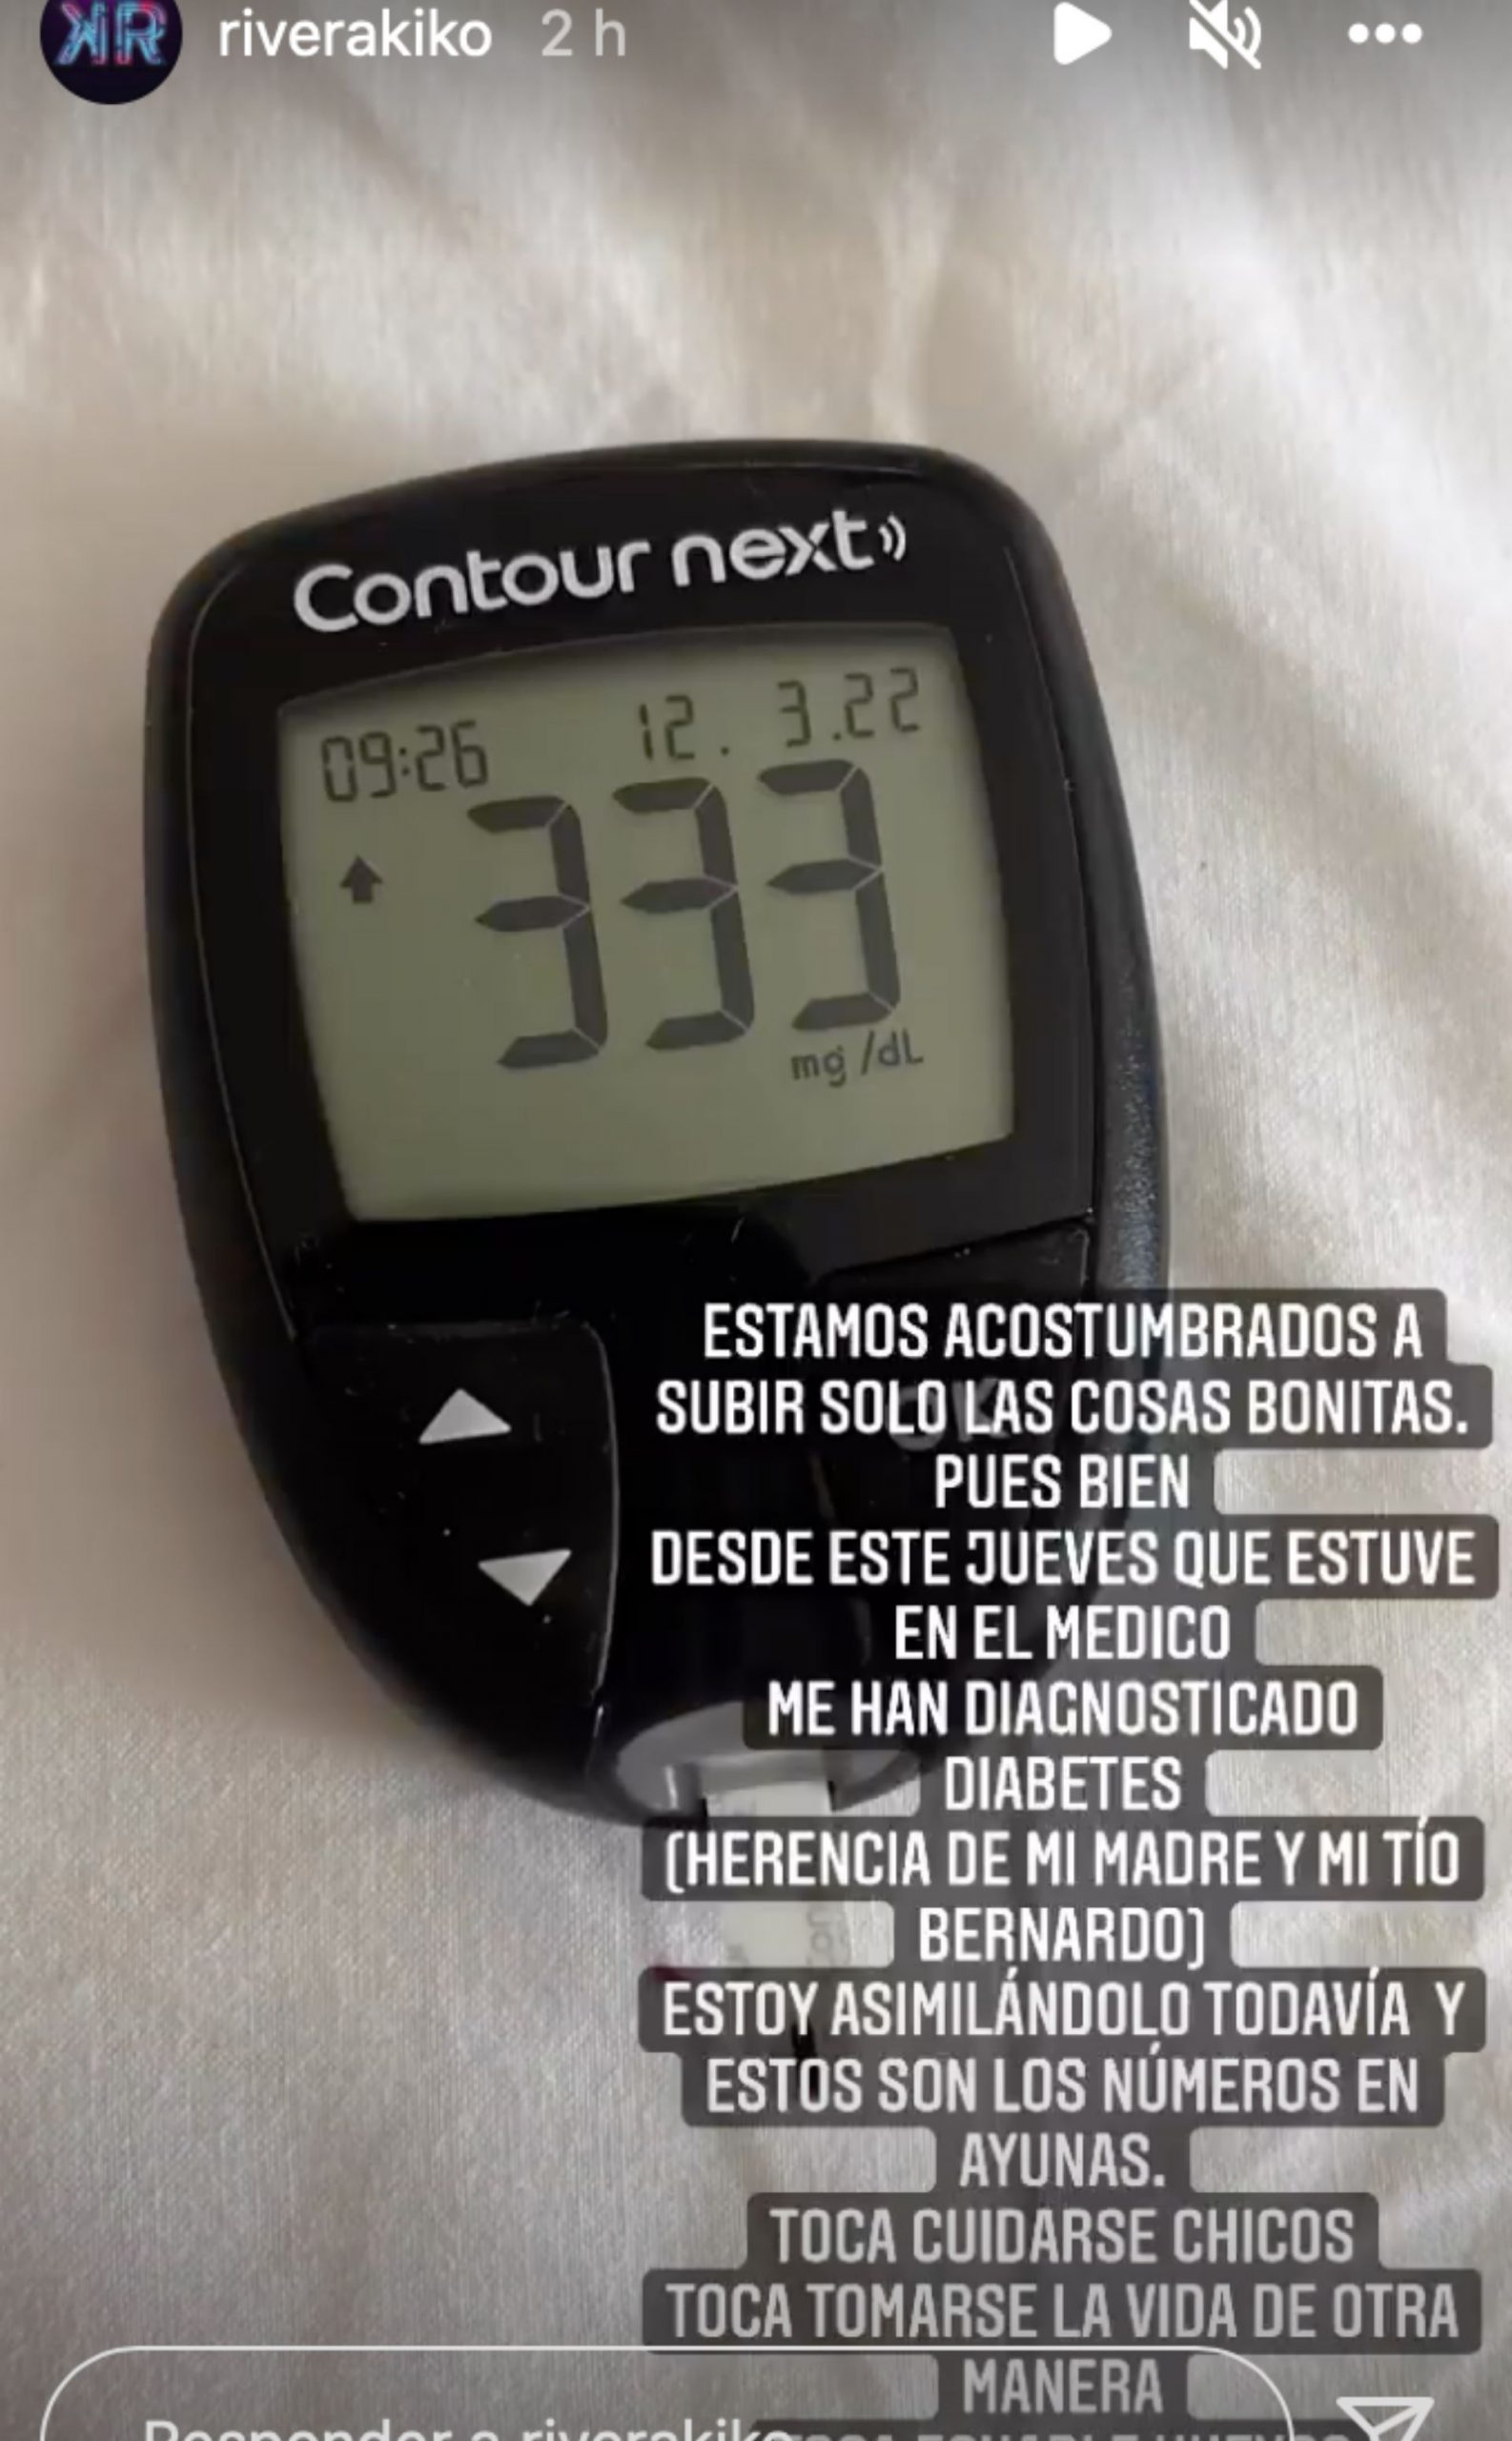 Kiko Rivera diabetes